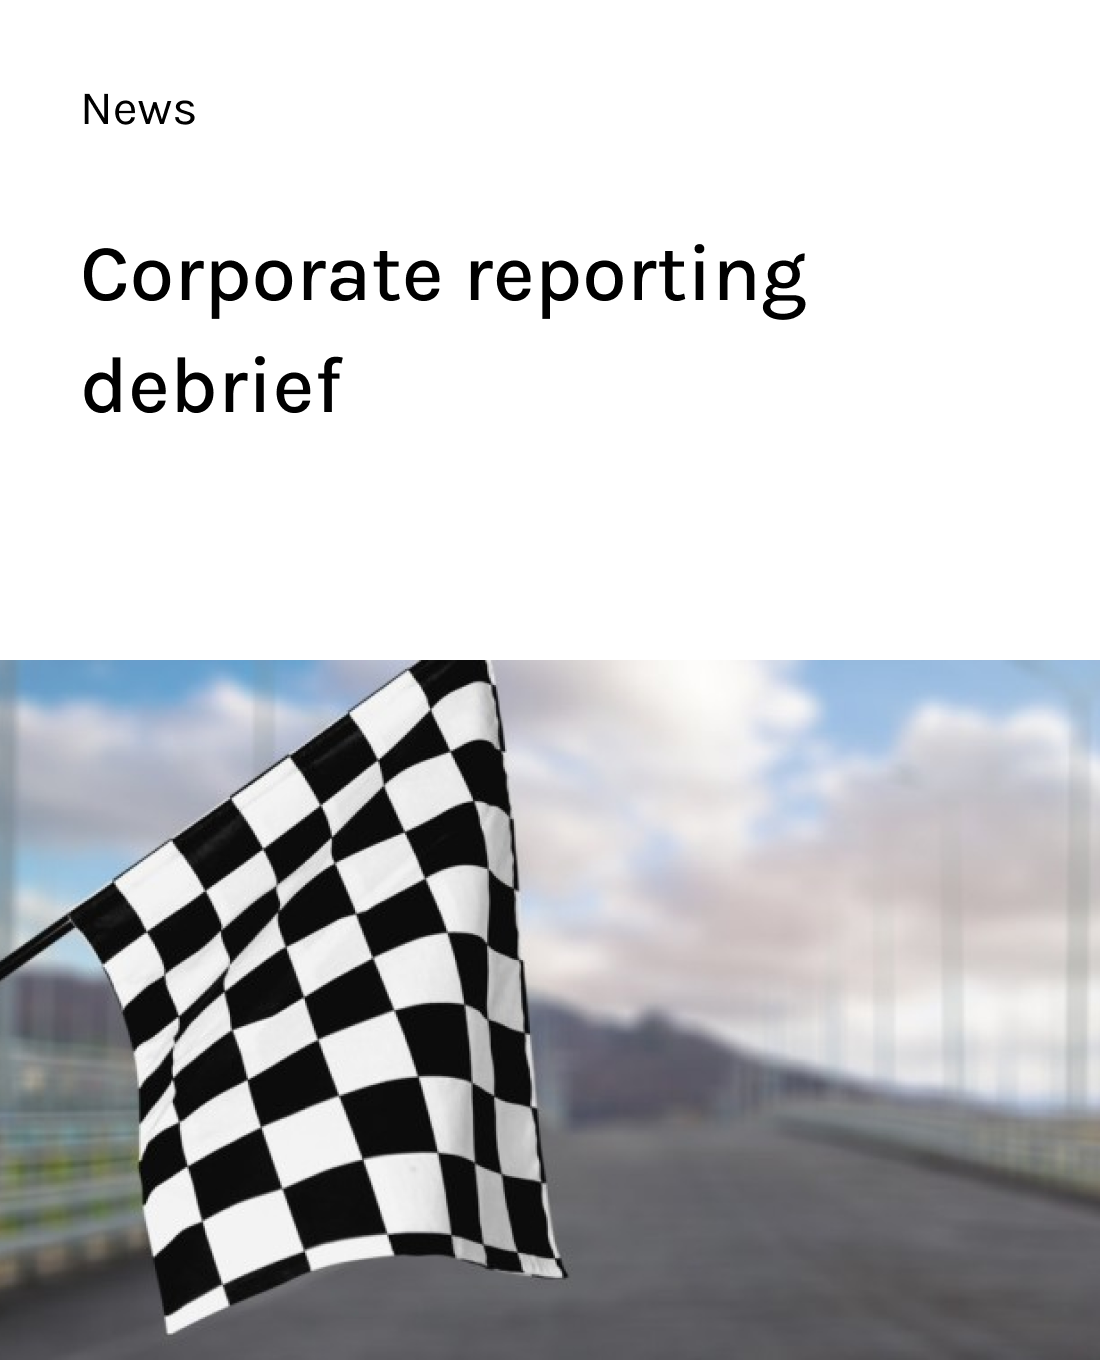 Corporate reporting debrief